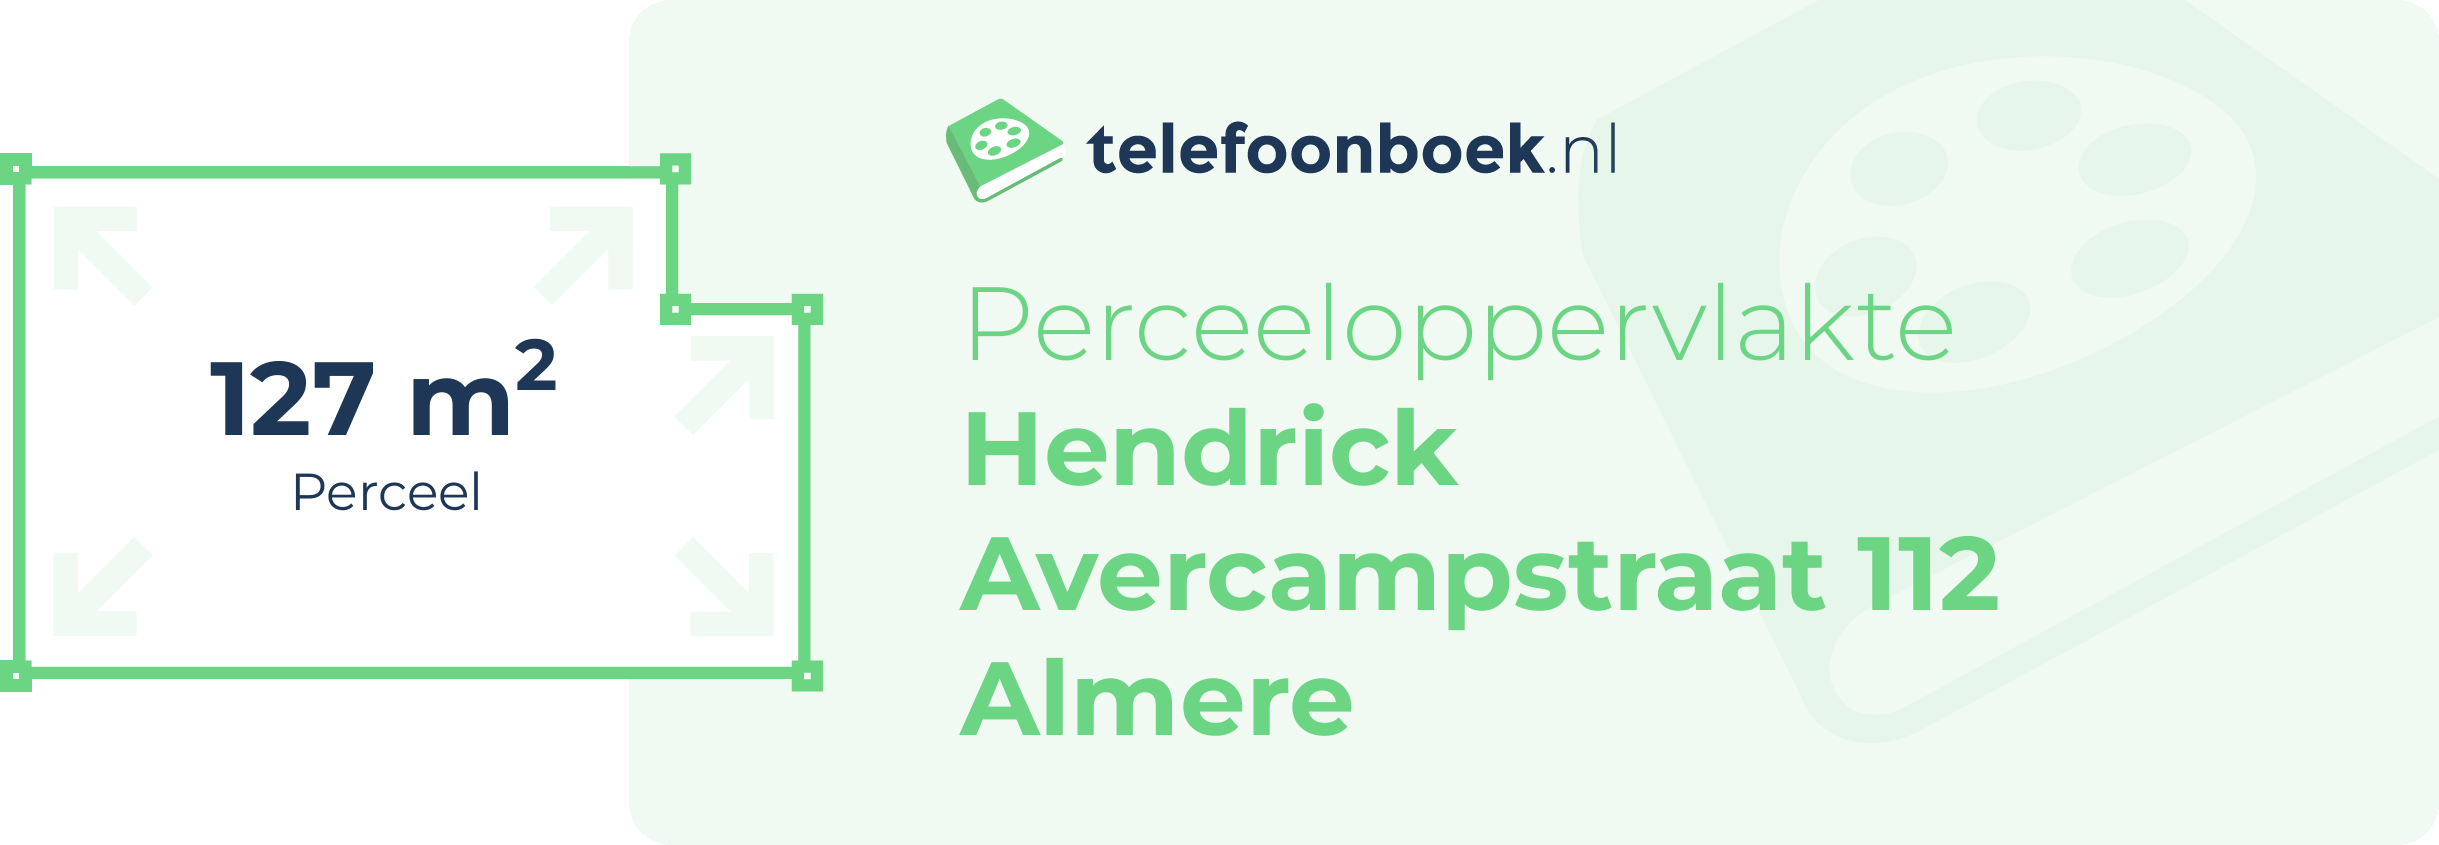 Perceeloppervlakte Hendrick Avercampstraat 112 Almere